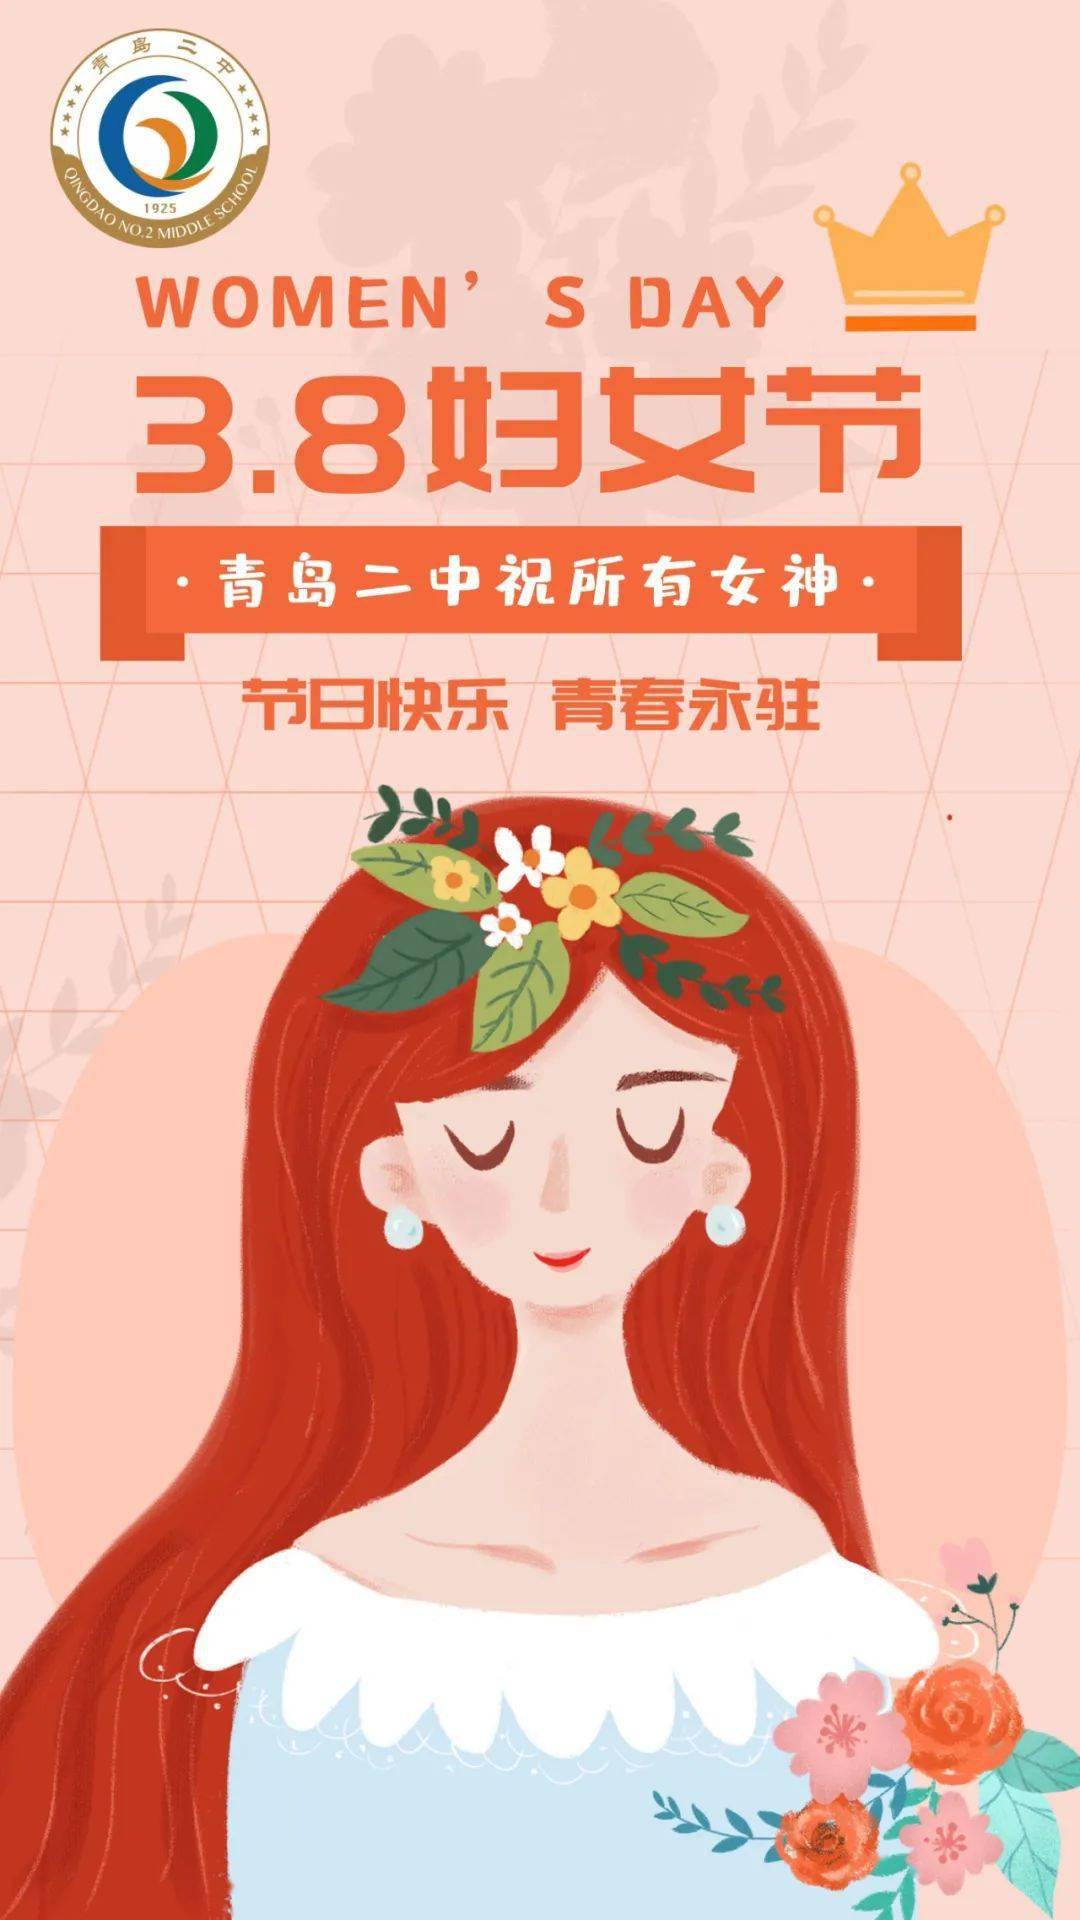 2022年3月8日青岛二中工会,妇女委员会祝愿全校女教职工敛藏一切美好